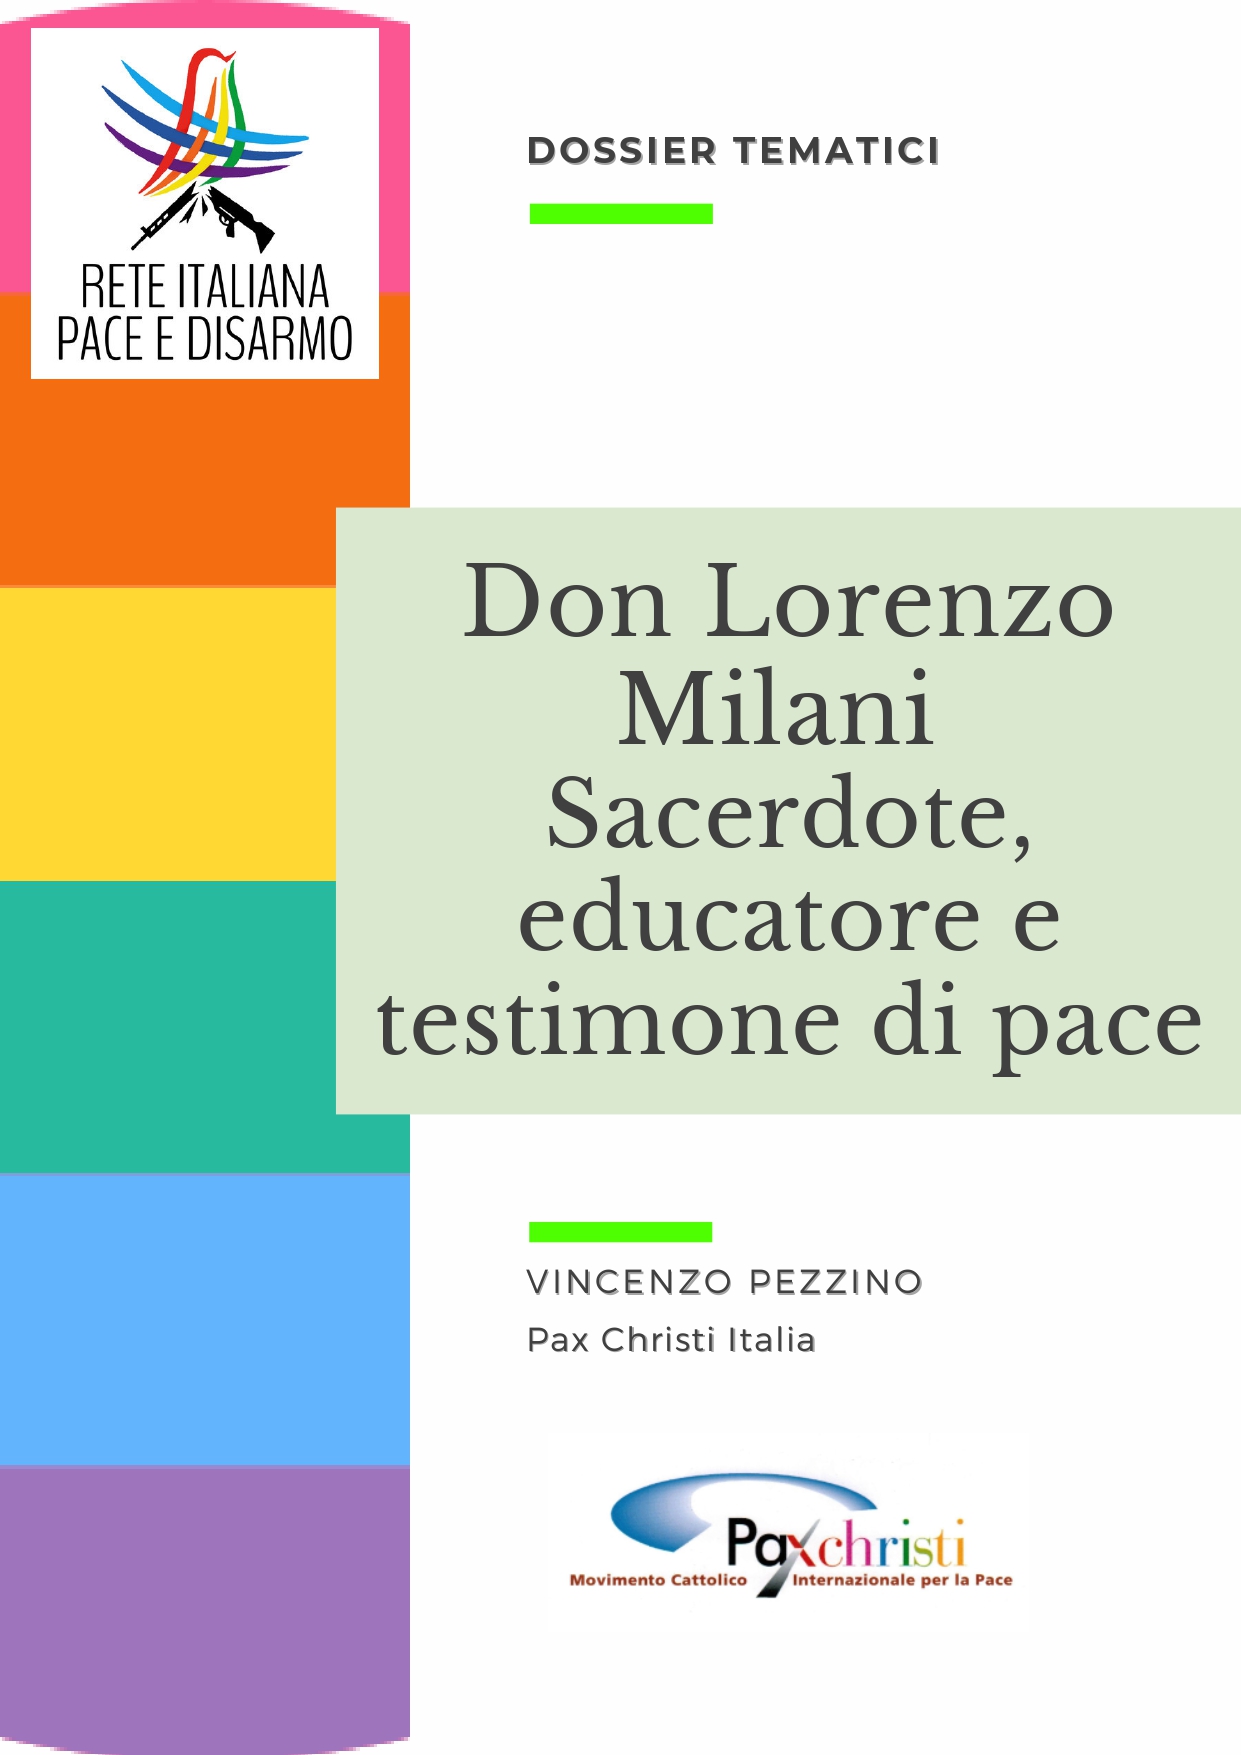 Don Lorenzo Milani, sacerdote, educatore e testimone di pace